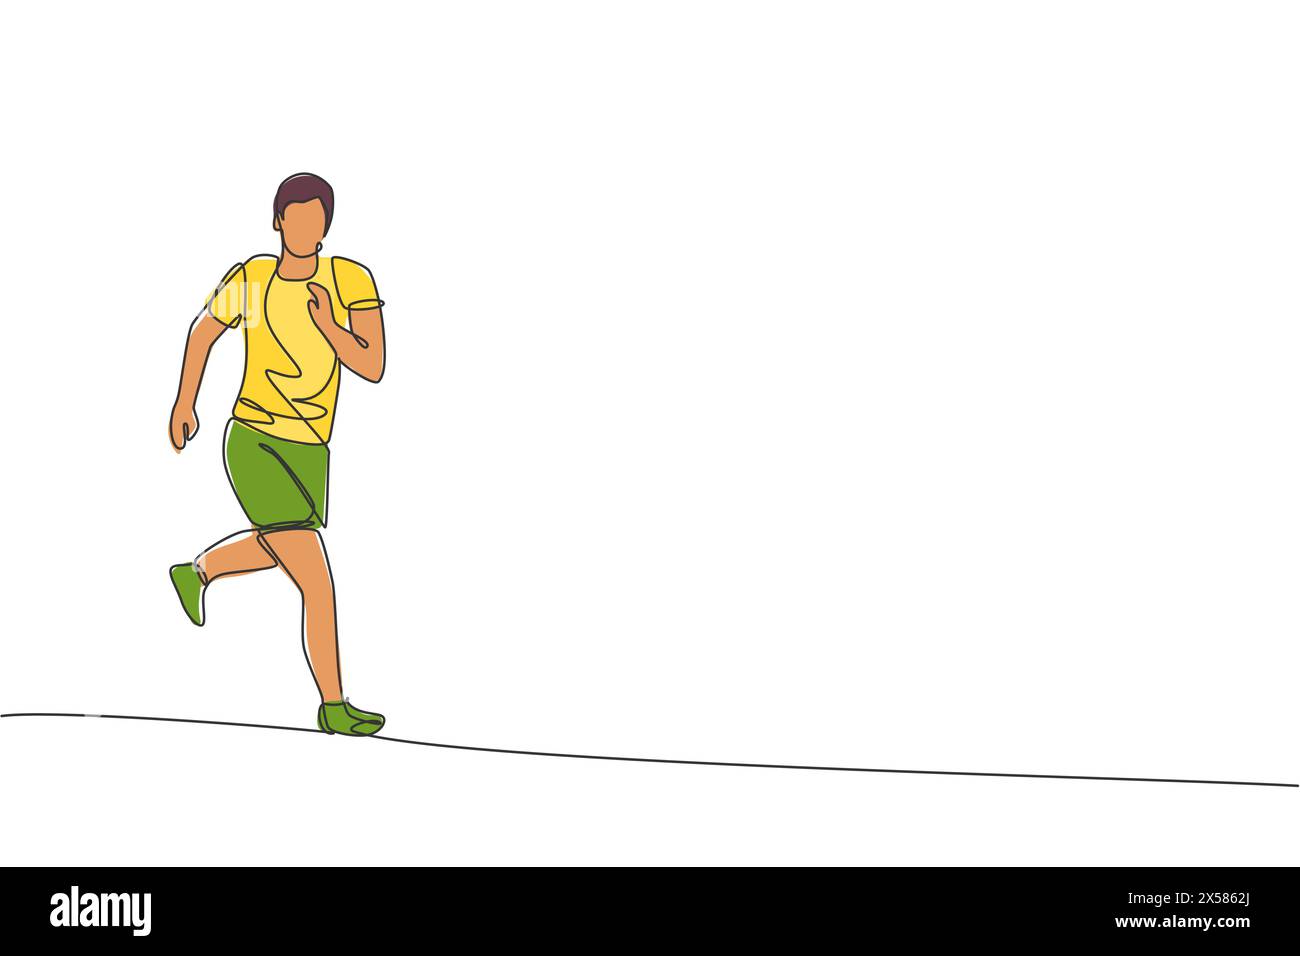 Un dessin au trait continu représentant un jeune athlète qui court avec une course de jogging. Sport individuel, concept compétitif. Conception de dessin de ligne unique dynamique Illustration de Vecteur